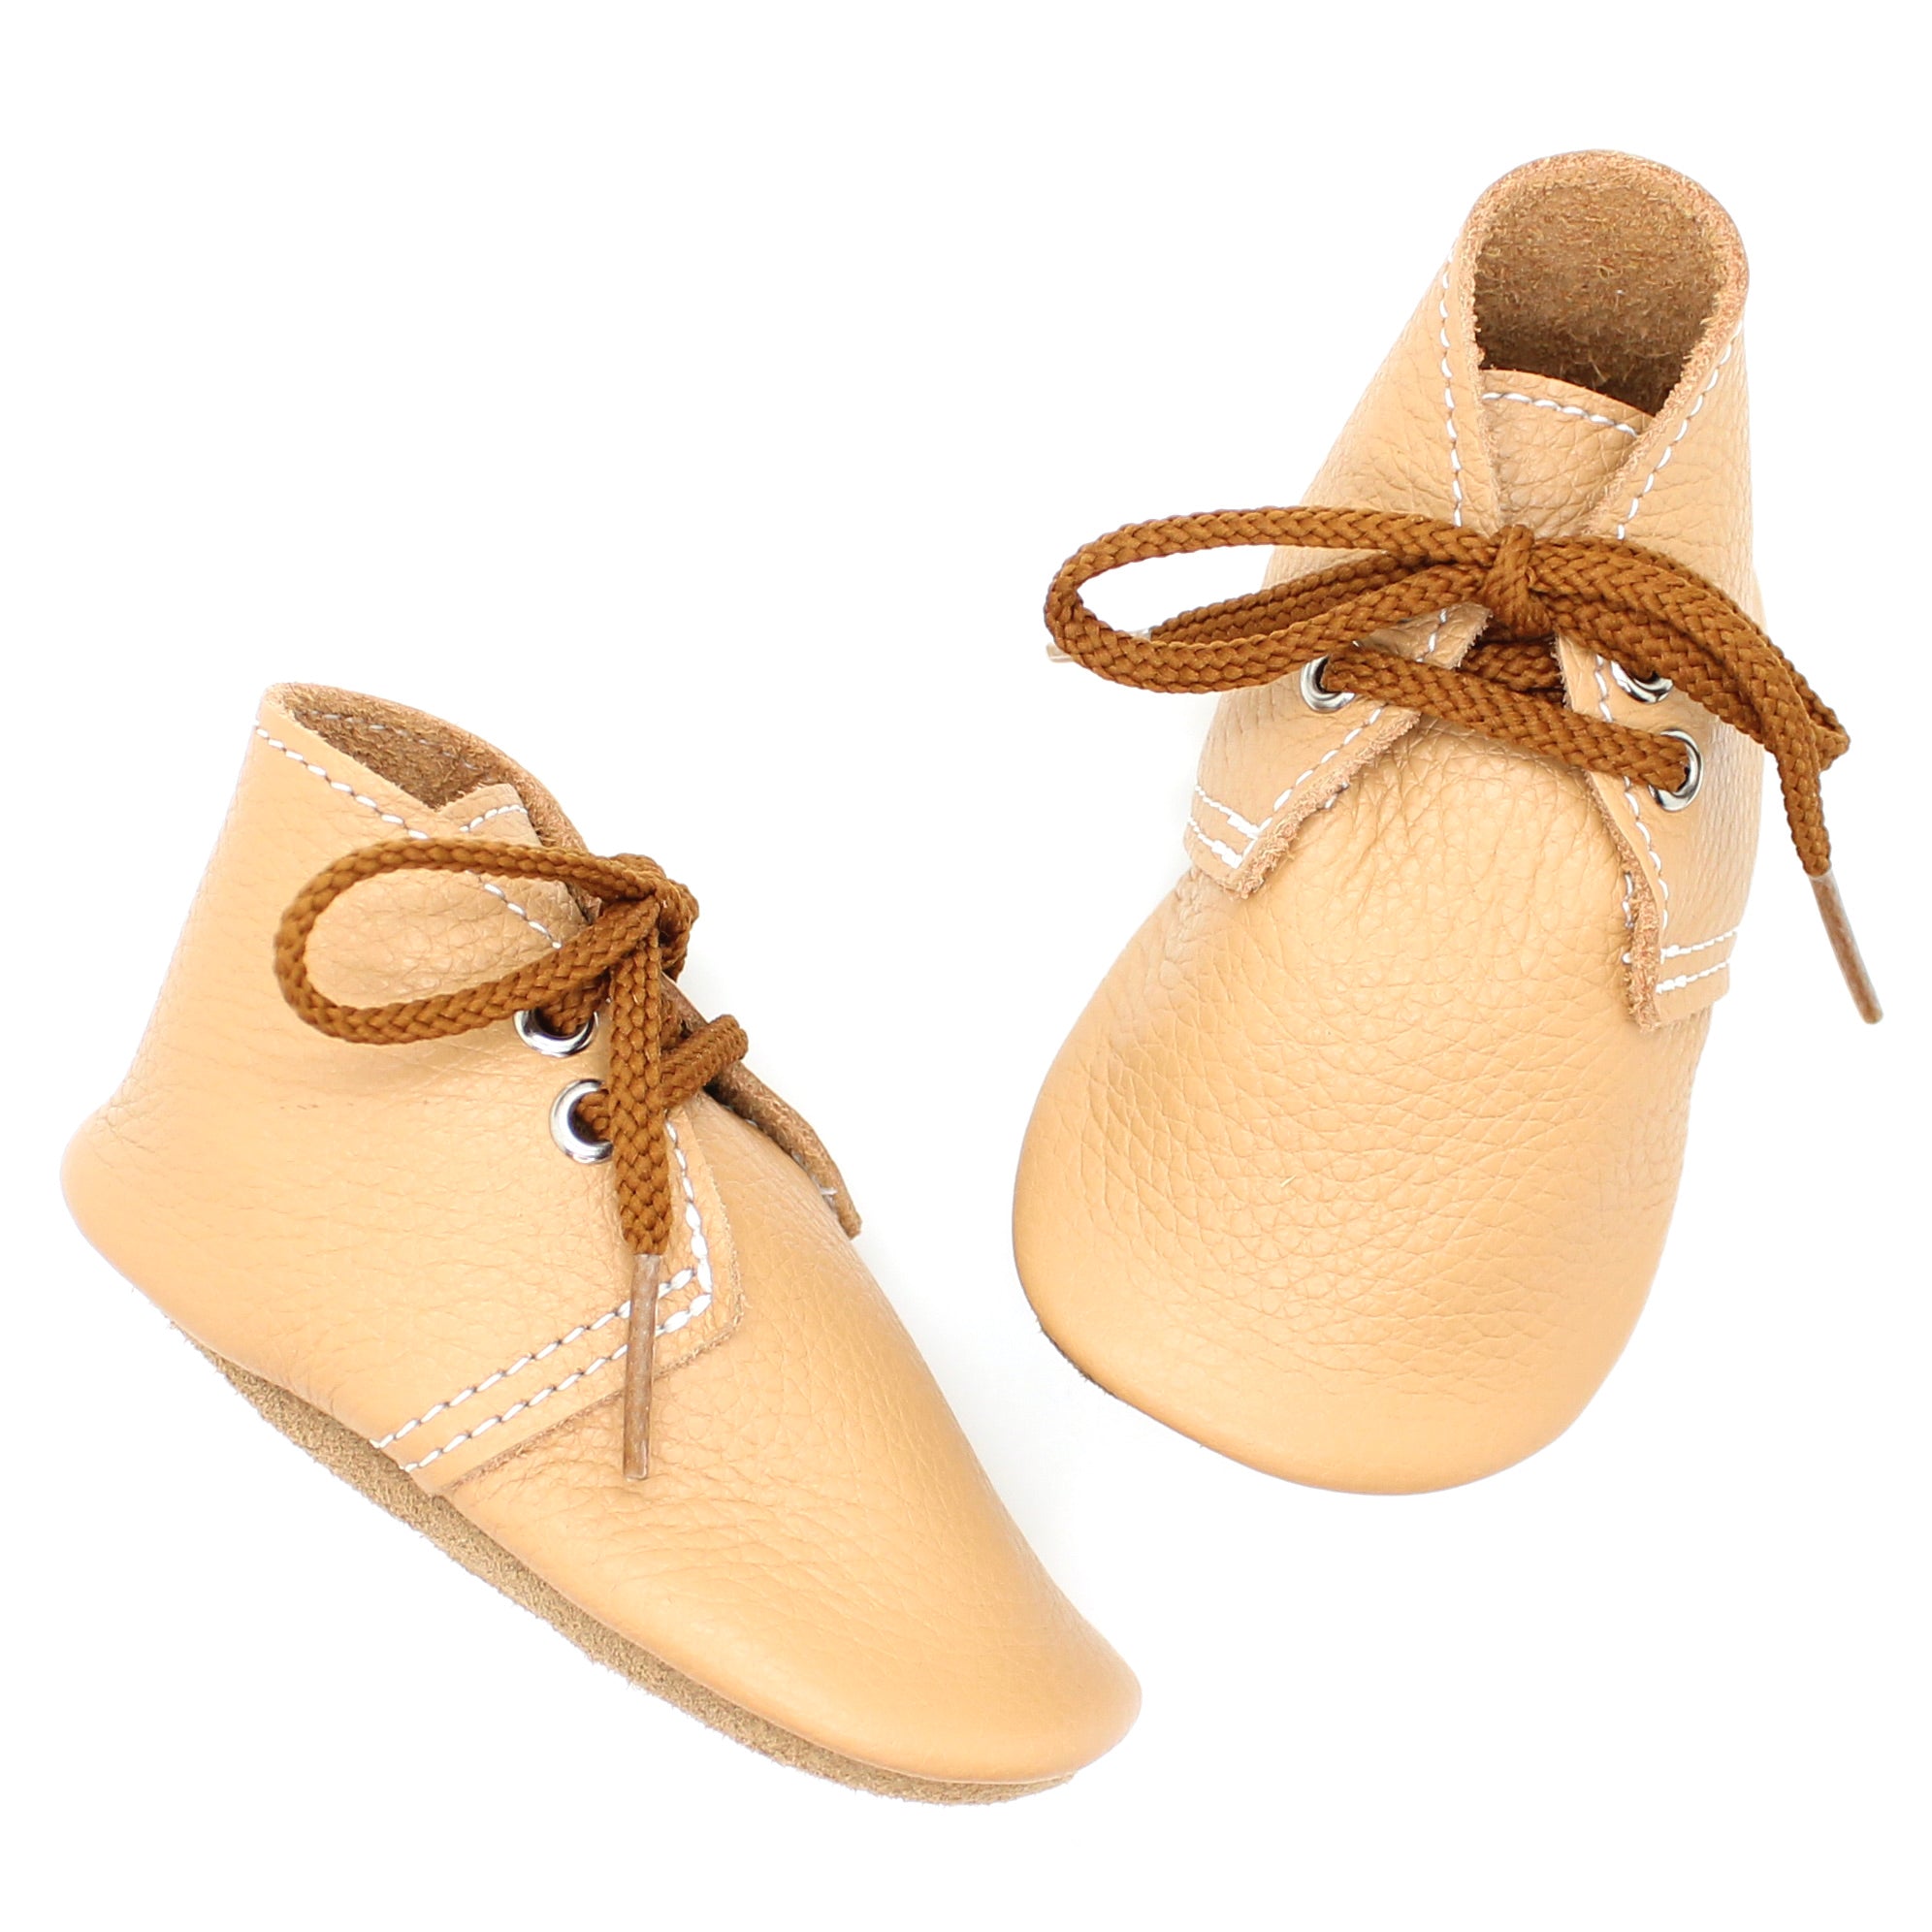 the oxford: cashew – mon petit shoes